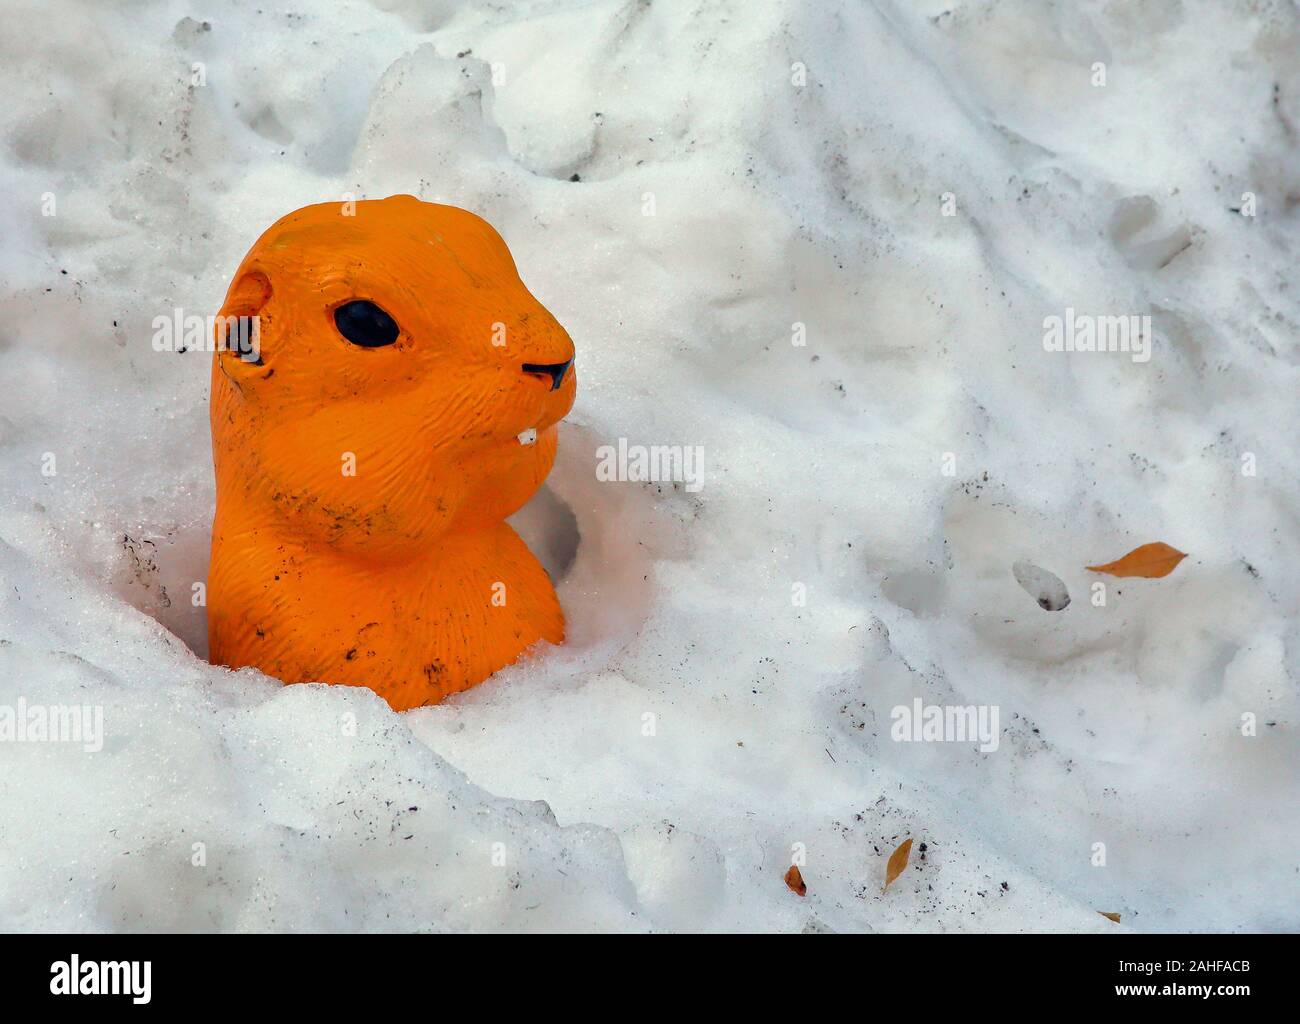 Plástico colorido Prairie Dog de cabeza y hombros vista en un banco de nieve Foto de stock